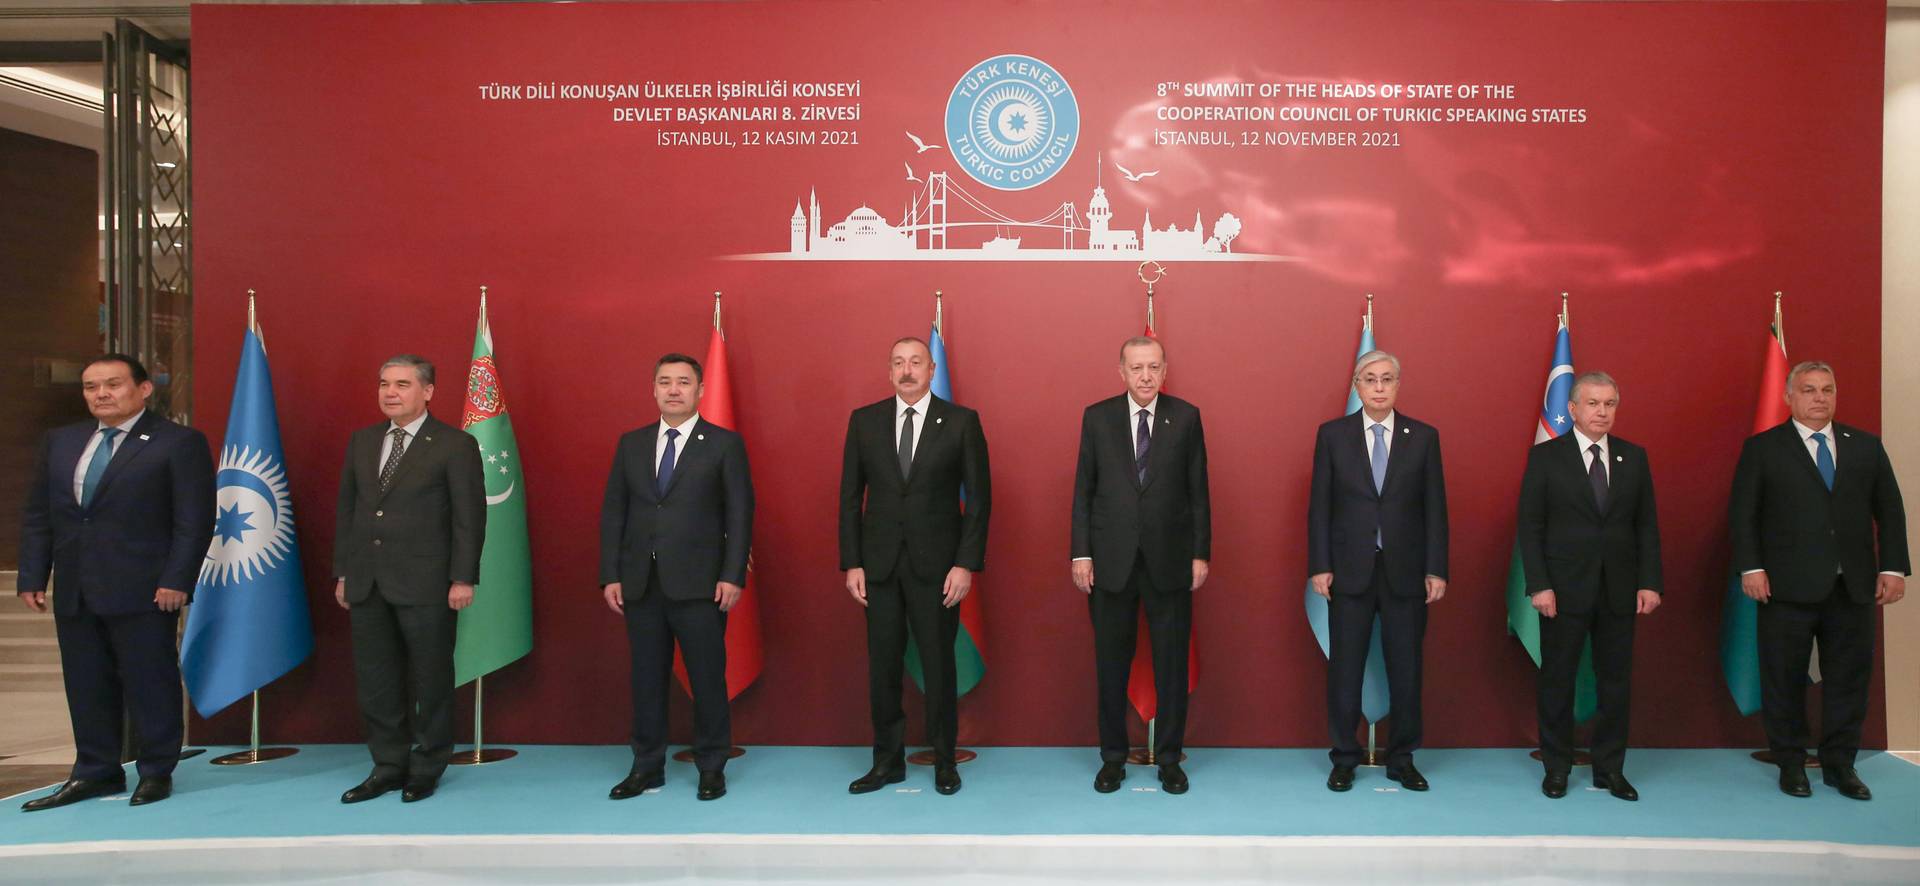 Участники VIII саммите Совета сотрудничества тюркоязычных государств. 12 ноября 2021 года